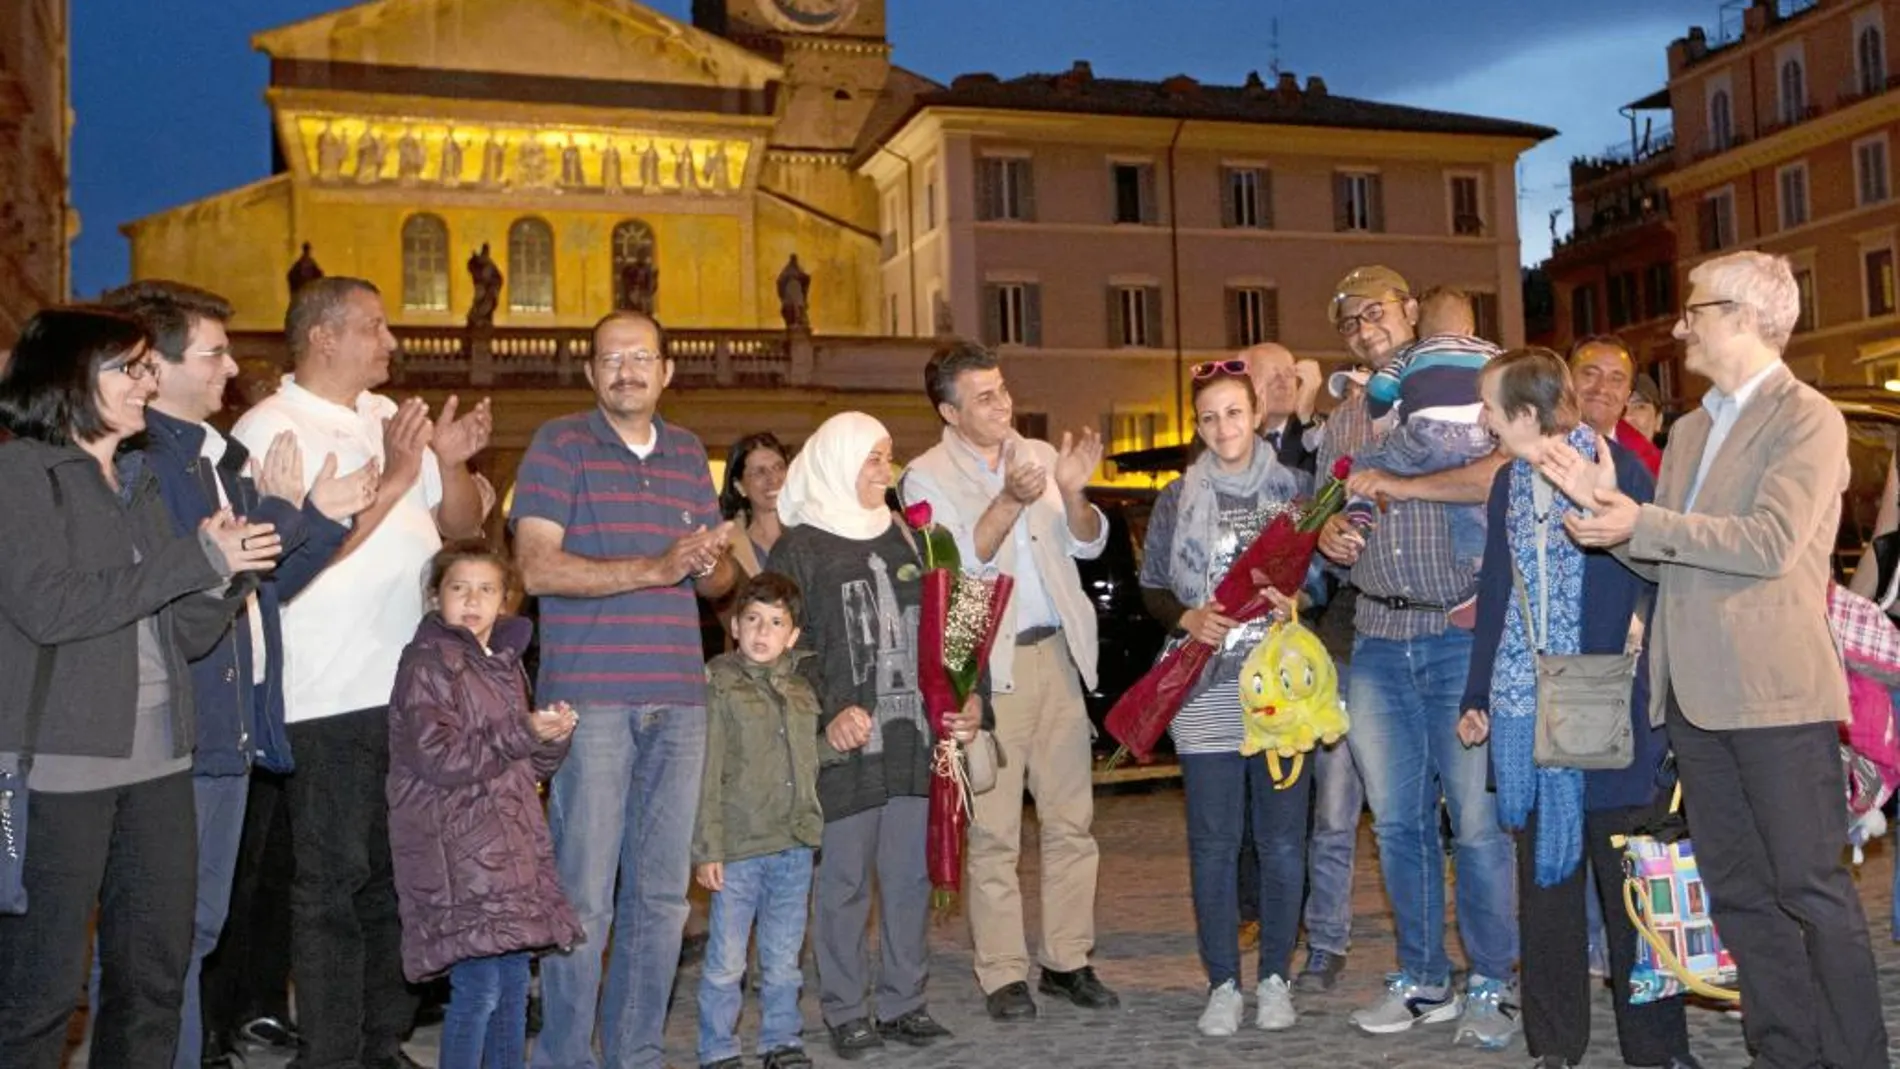 Los refugiados que viajaron con el Papa fueron recibidos ayer por la Comunidad de San Egidio, encargada de darles la primera acogida